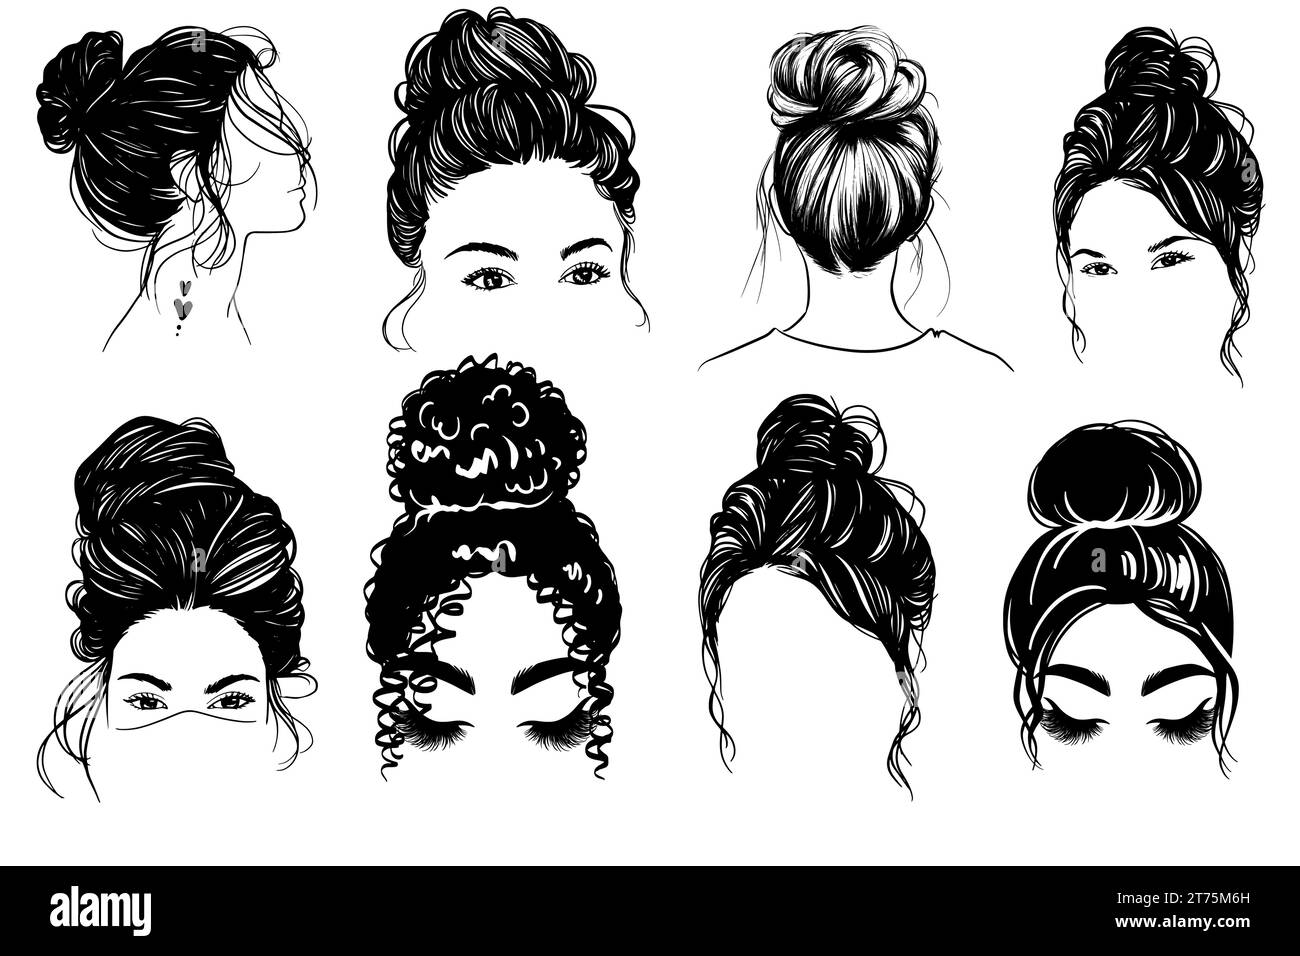 Vector Woman Hairstyle Illustration, disordinato Bun Hair Line Art in vari temi. Collezione disegnata a mano. V20 Illustrazione Vettoriale